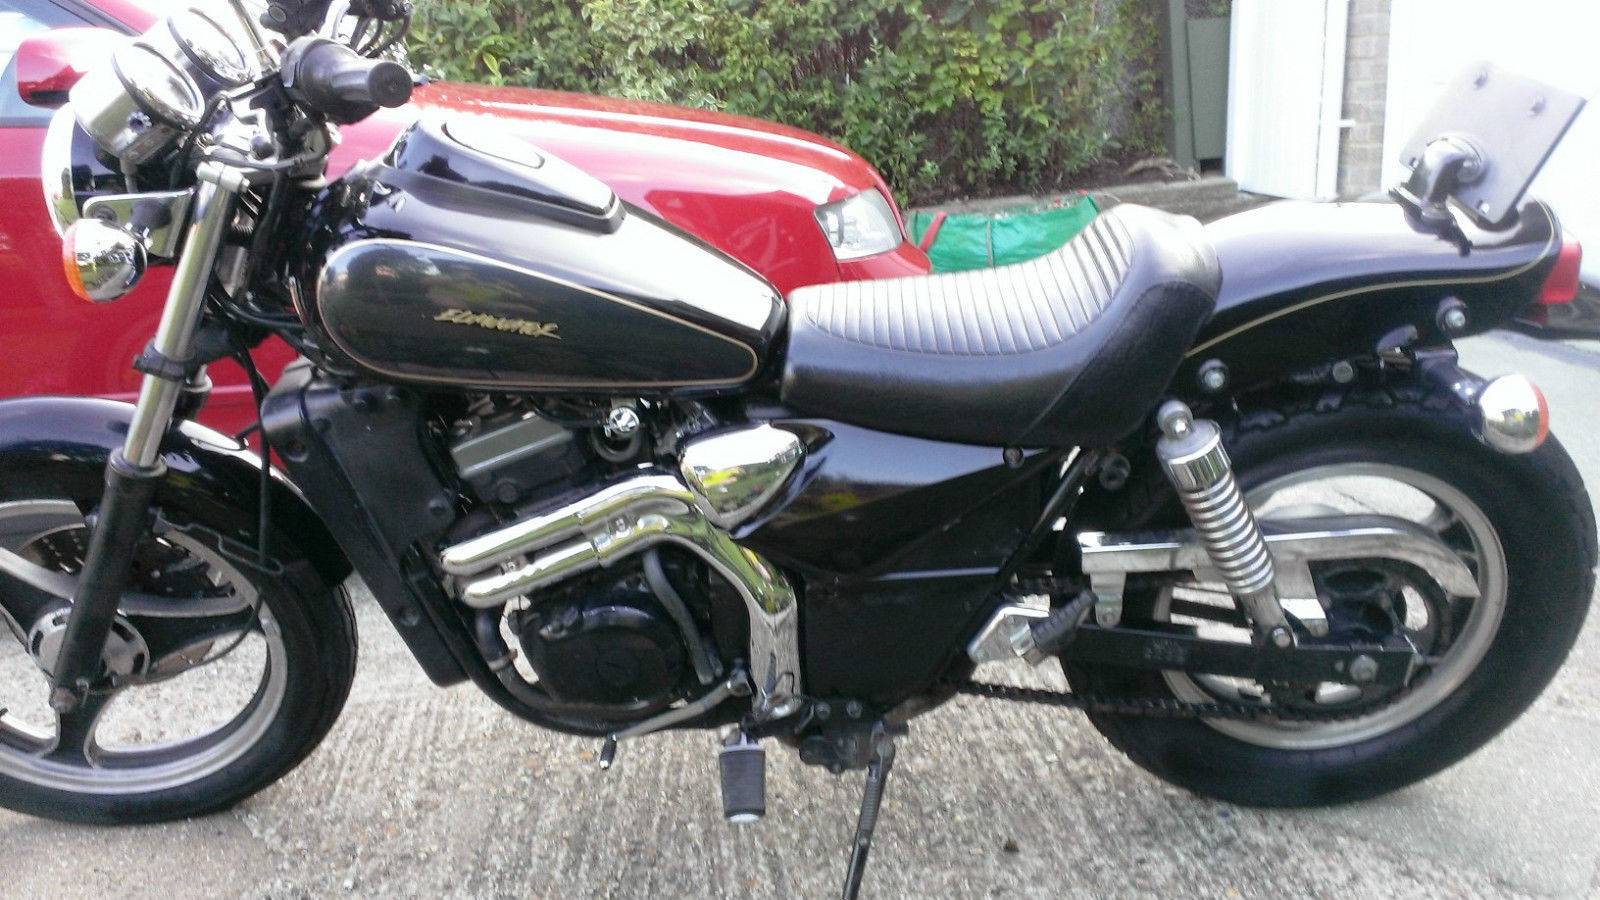 Кавасаки ниндзя 250 r (kawasaki ninja 250r)  - мотоцикл для начинающих от японского производителя kawasaki